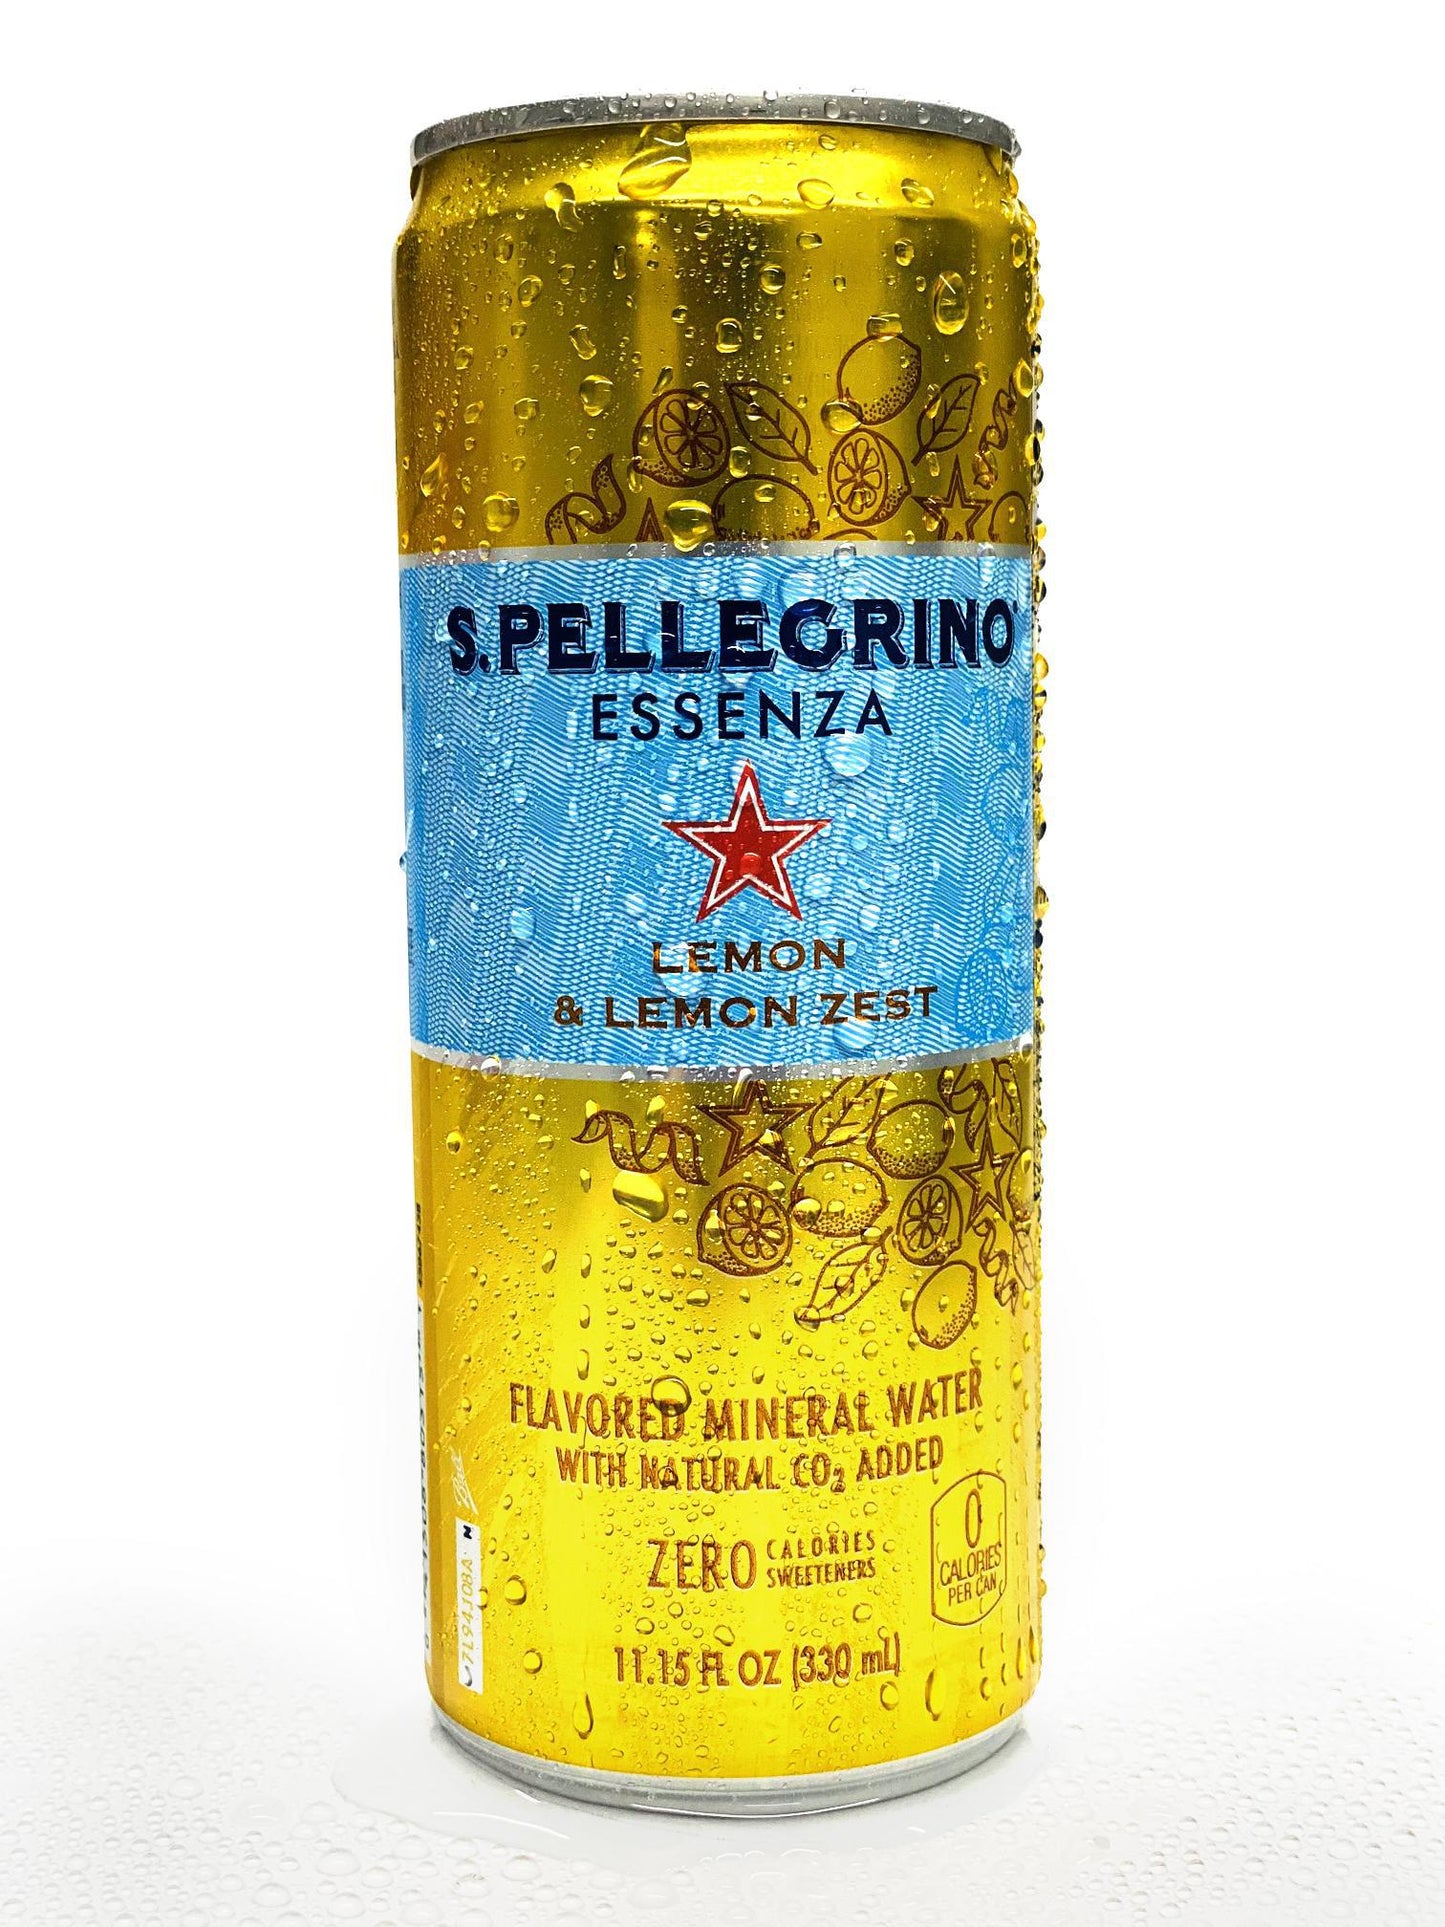 Sanpellegrino Lemon & Lemon Zest Can, 11.15 fl oz